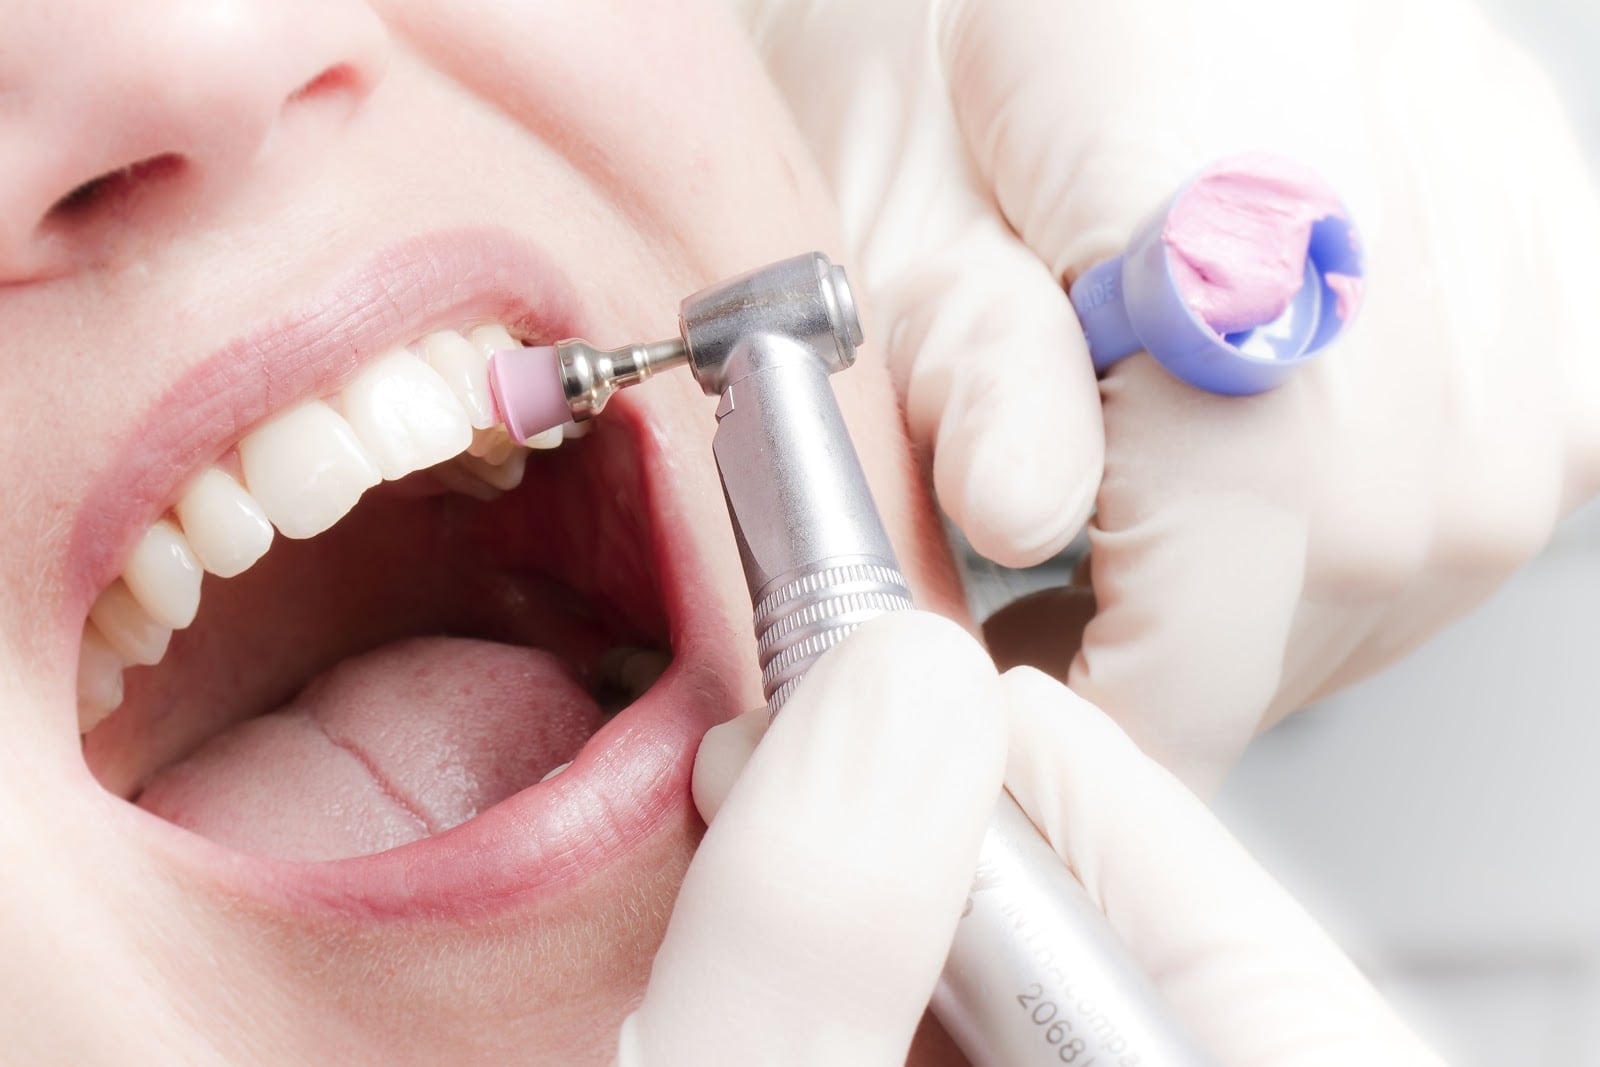 Профессиональная чистка зубов позволяет избавиться от налета и бактерий, что предотвратит возникновение воспалительных процессов, которые приводят к потери зубов. Проводить процедуру необходимо дважды в год.